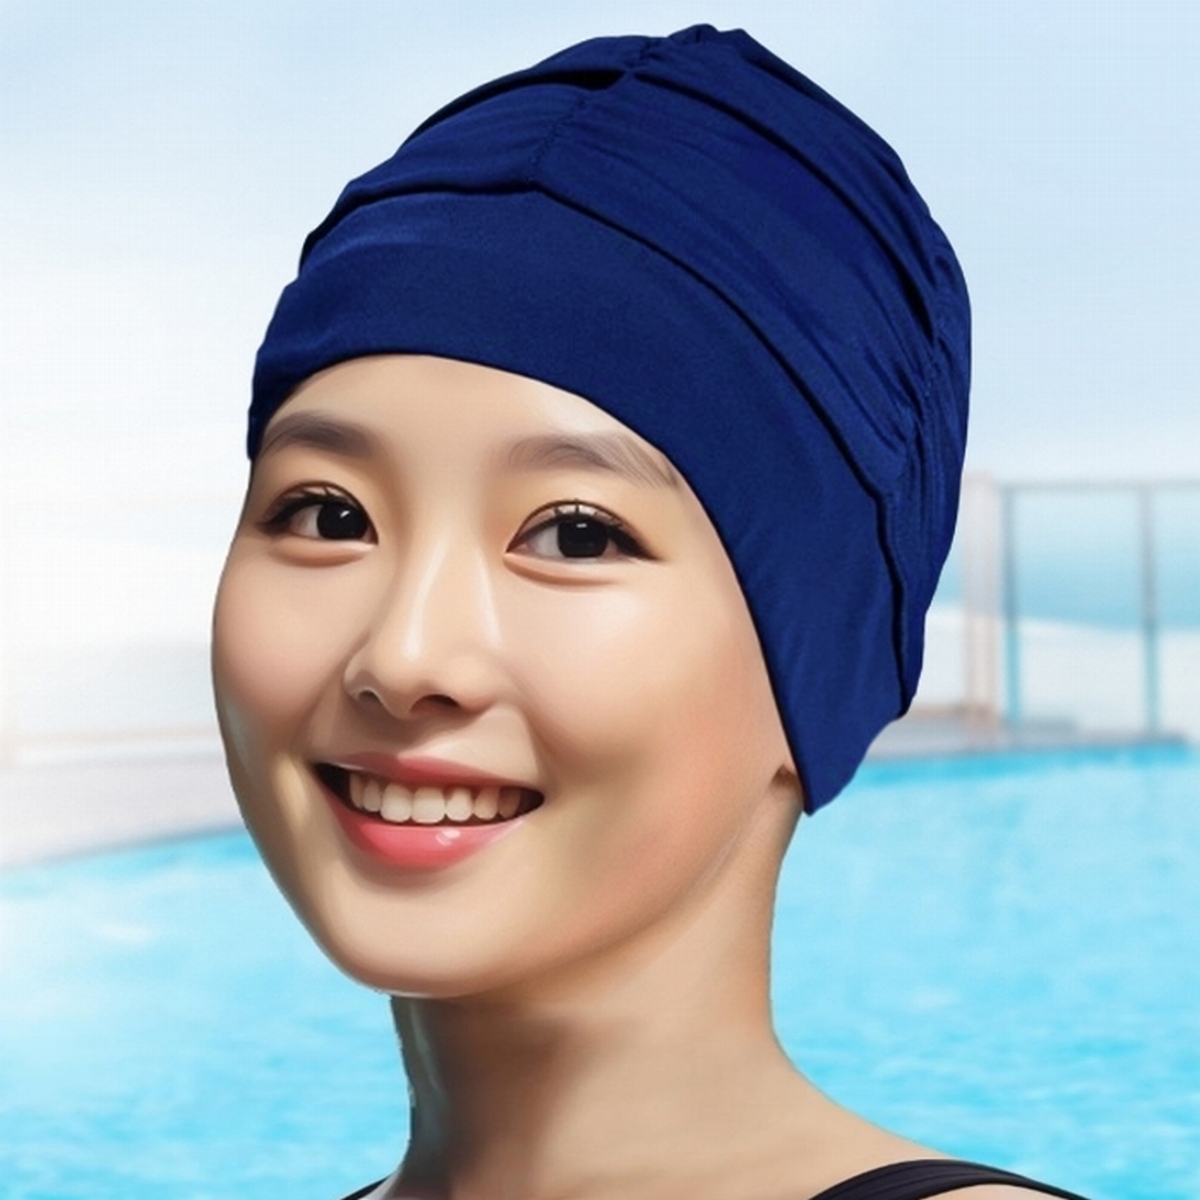 水泳 帽子 スイムキャップ 水泳帽 レディース 長い髪 深め ゆったり 大きめ 水泳キャップ ロングヘア スイミングキャップ